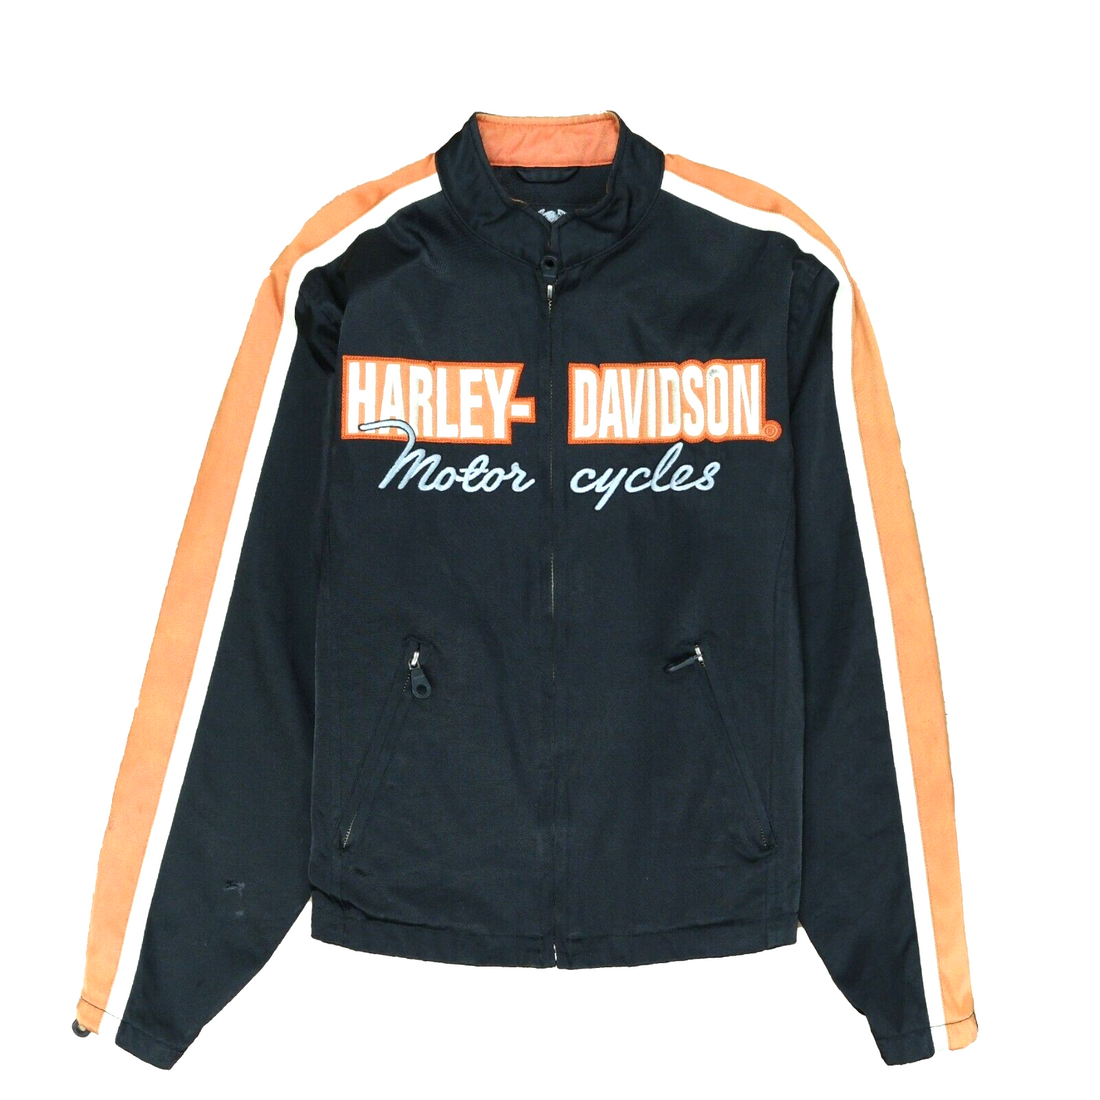 Vintage Harley Davidson Motorcycle Cafe Racer Jacket Size Medium Black